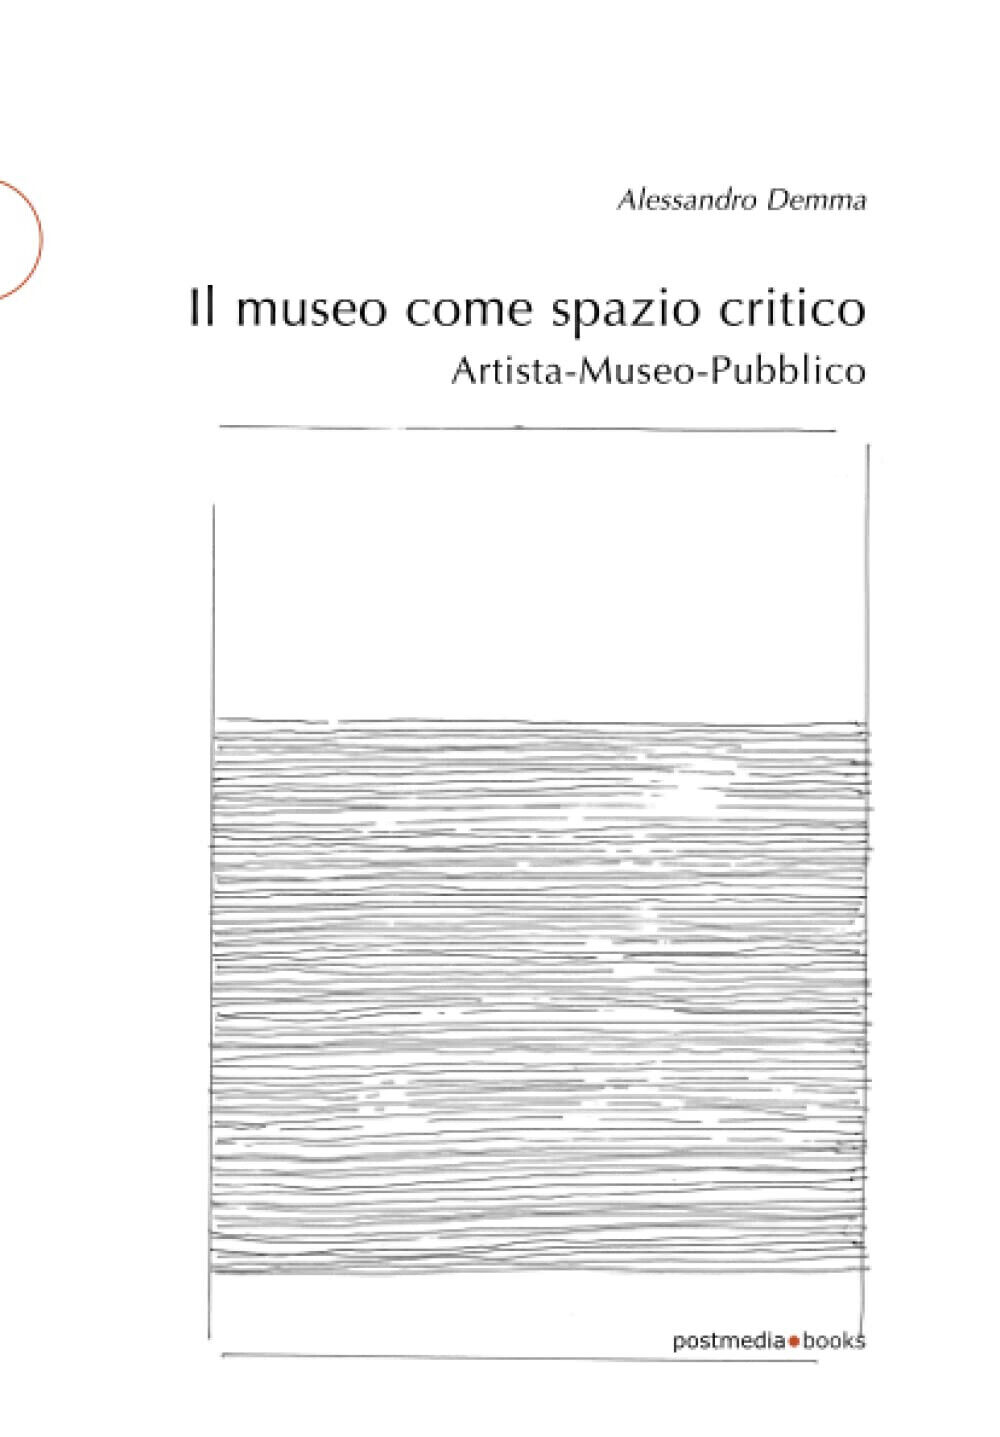 l museo come spazio critico - Alessandro Demma - Postmedia, 2018 libro usato